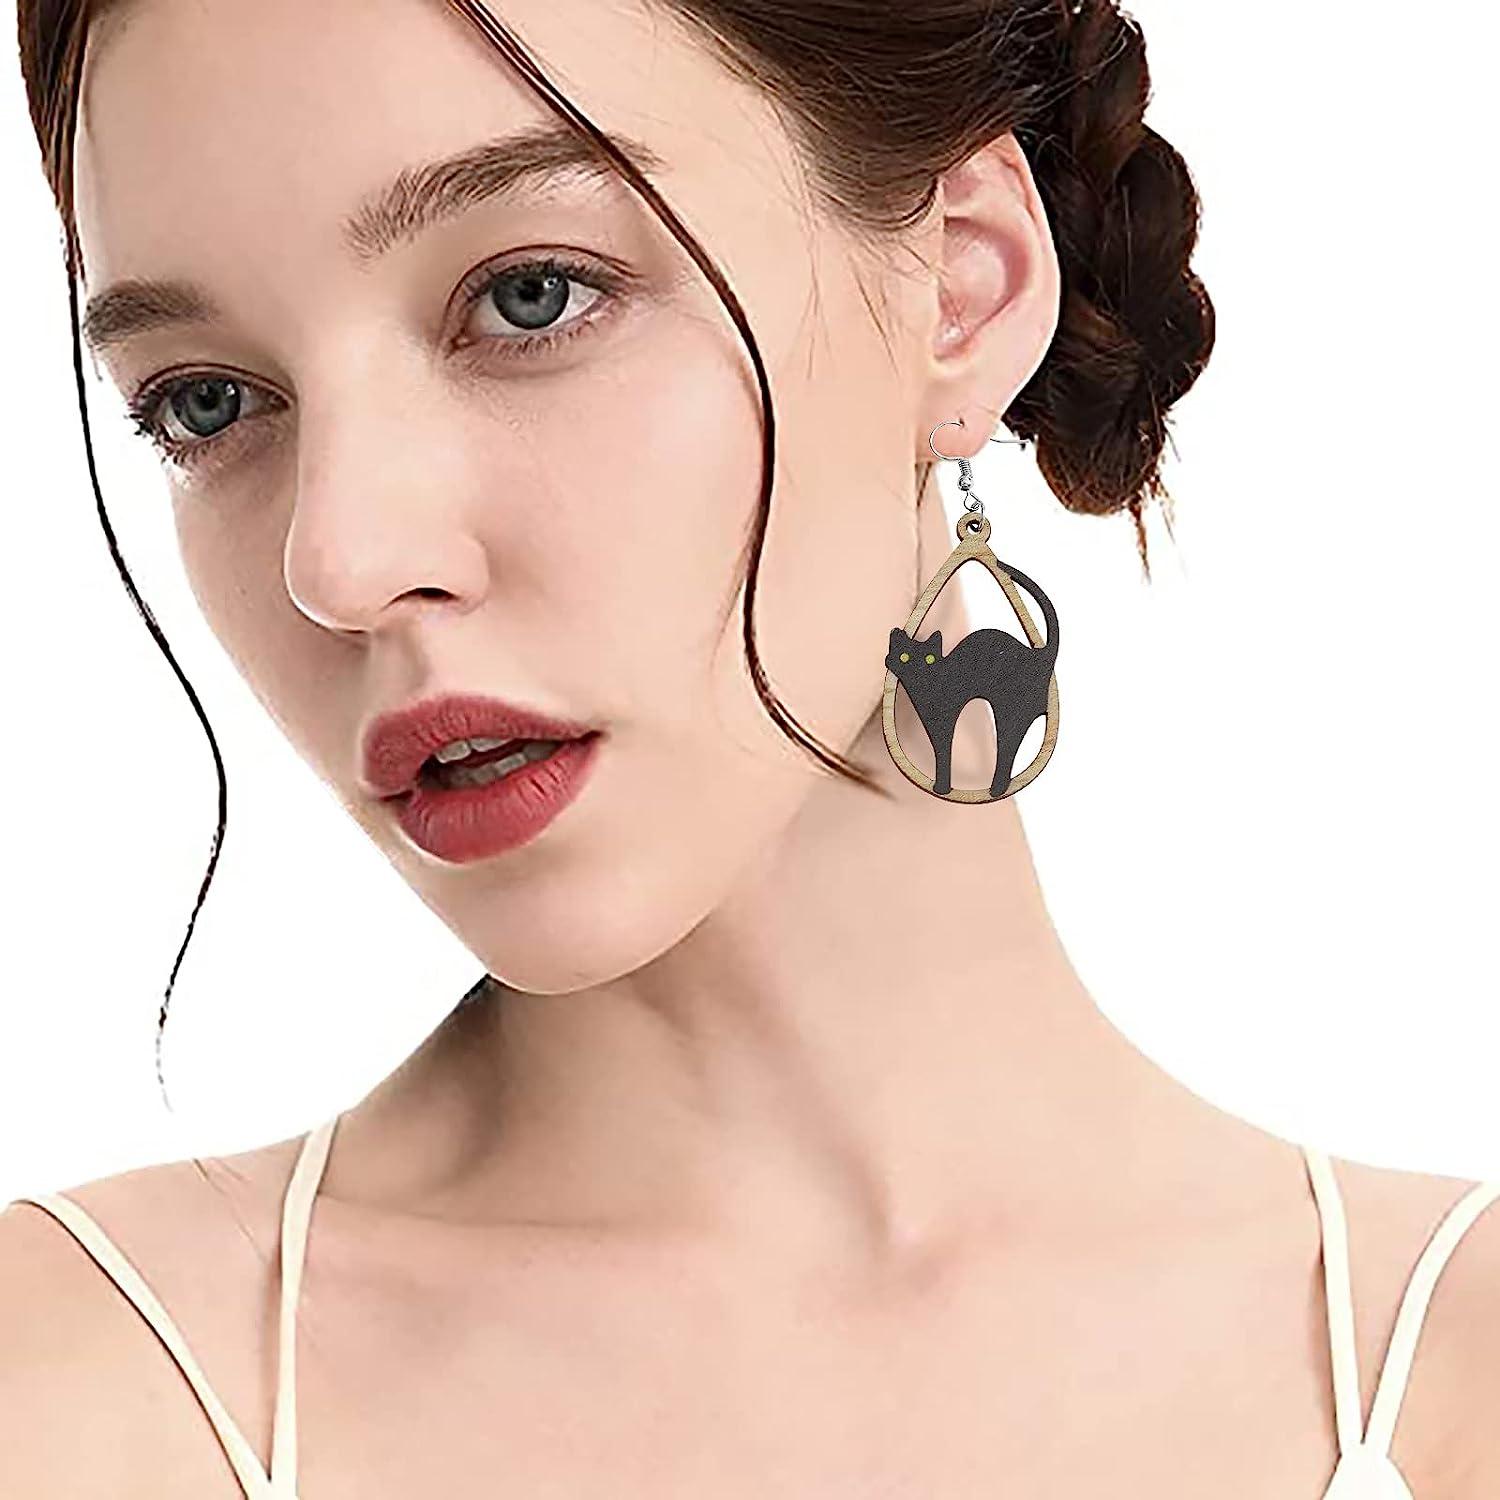 Black Cat Water Drop Earrings